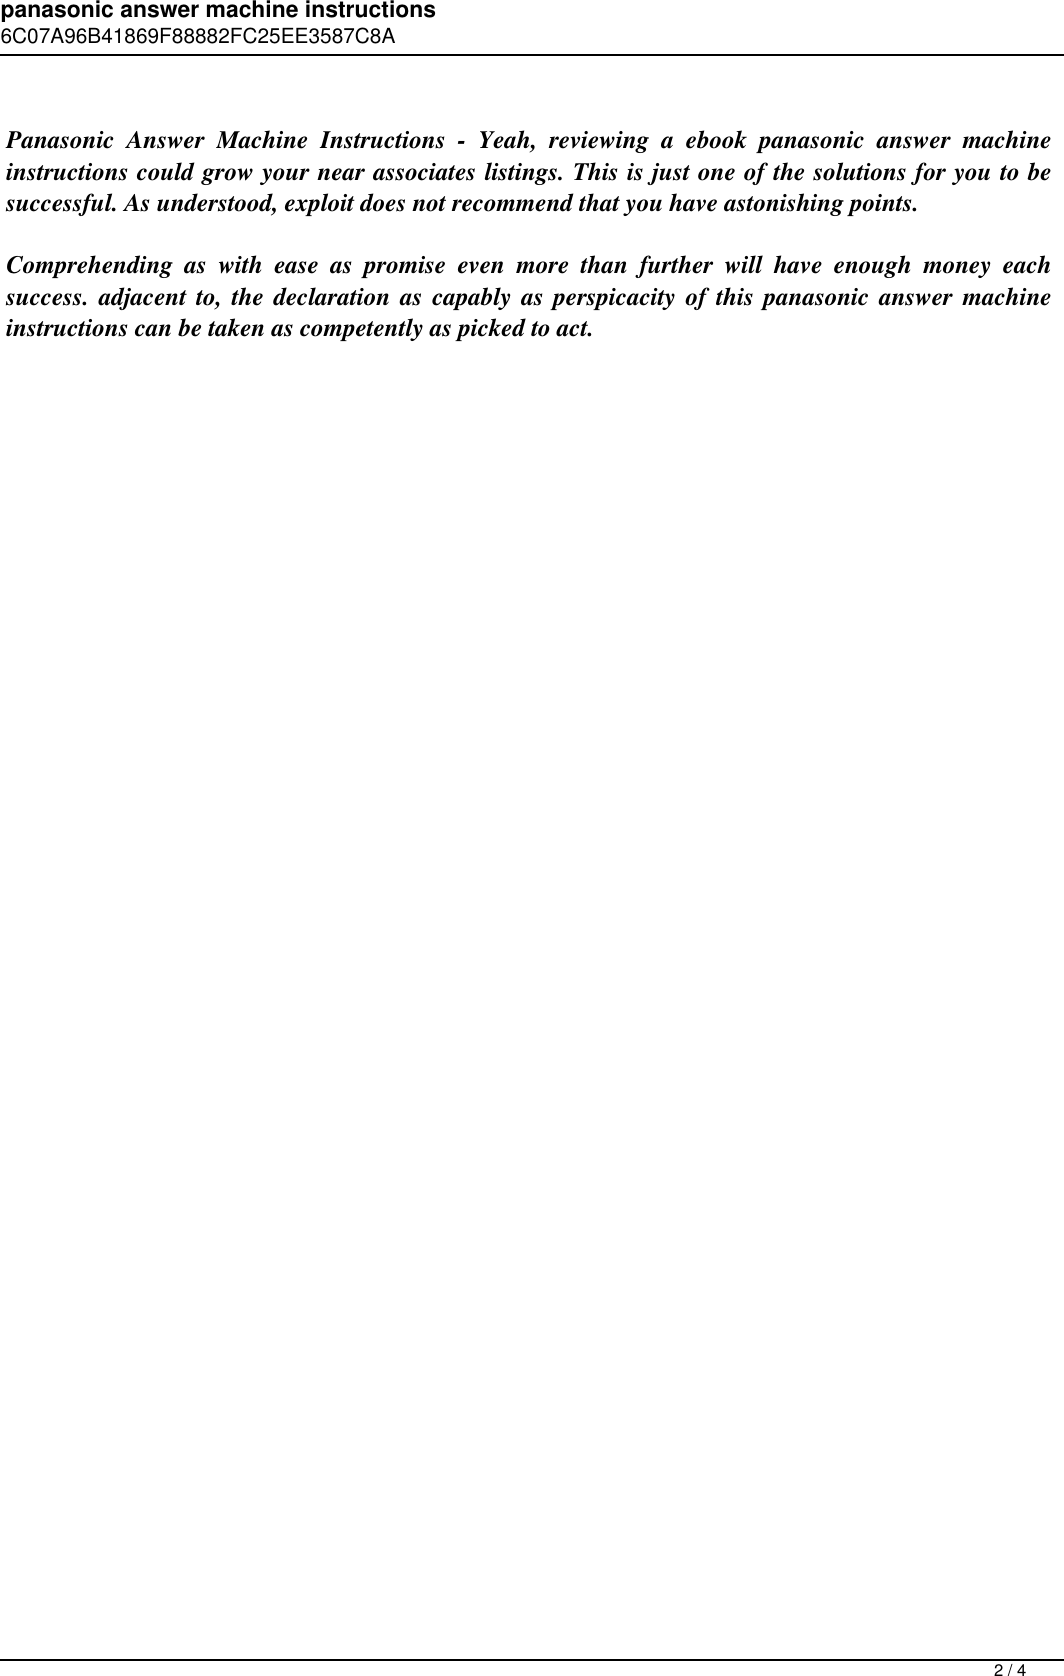 Page 2 of 4 - Panasonic Answer Machine Instructions